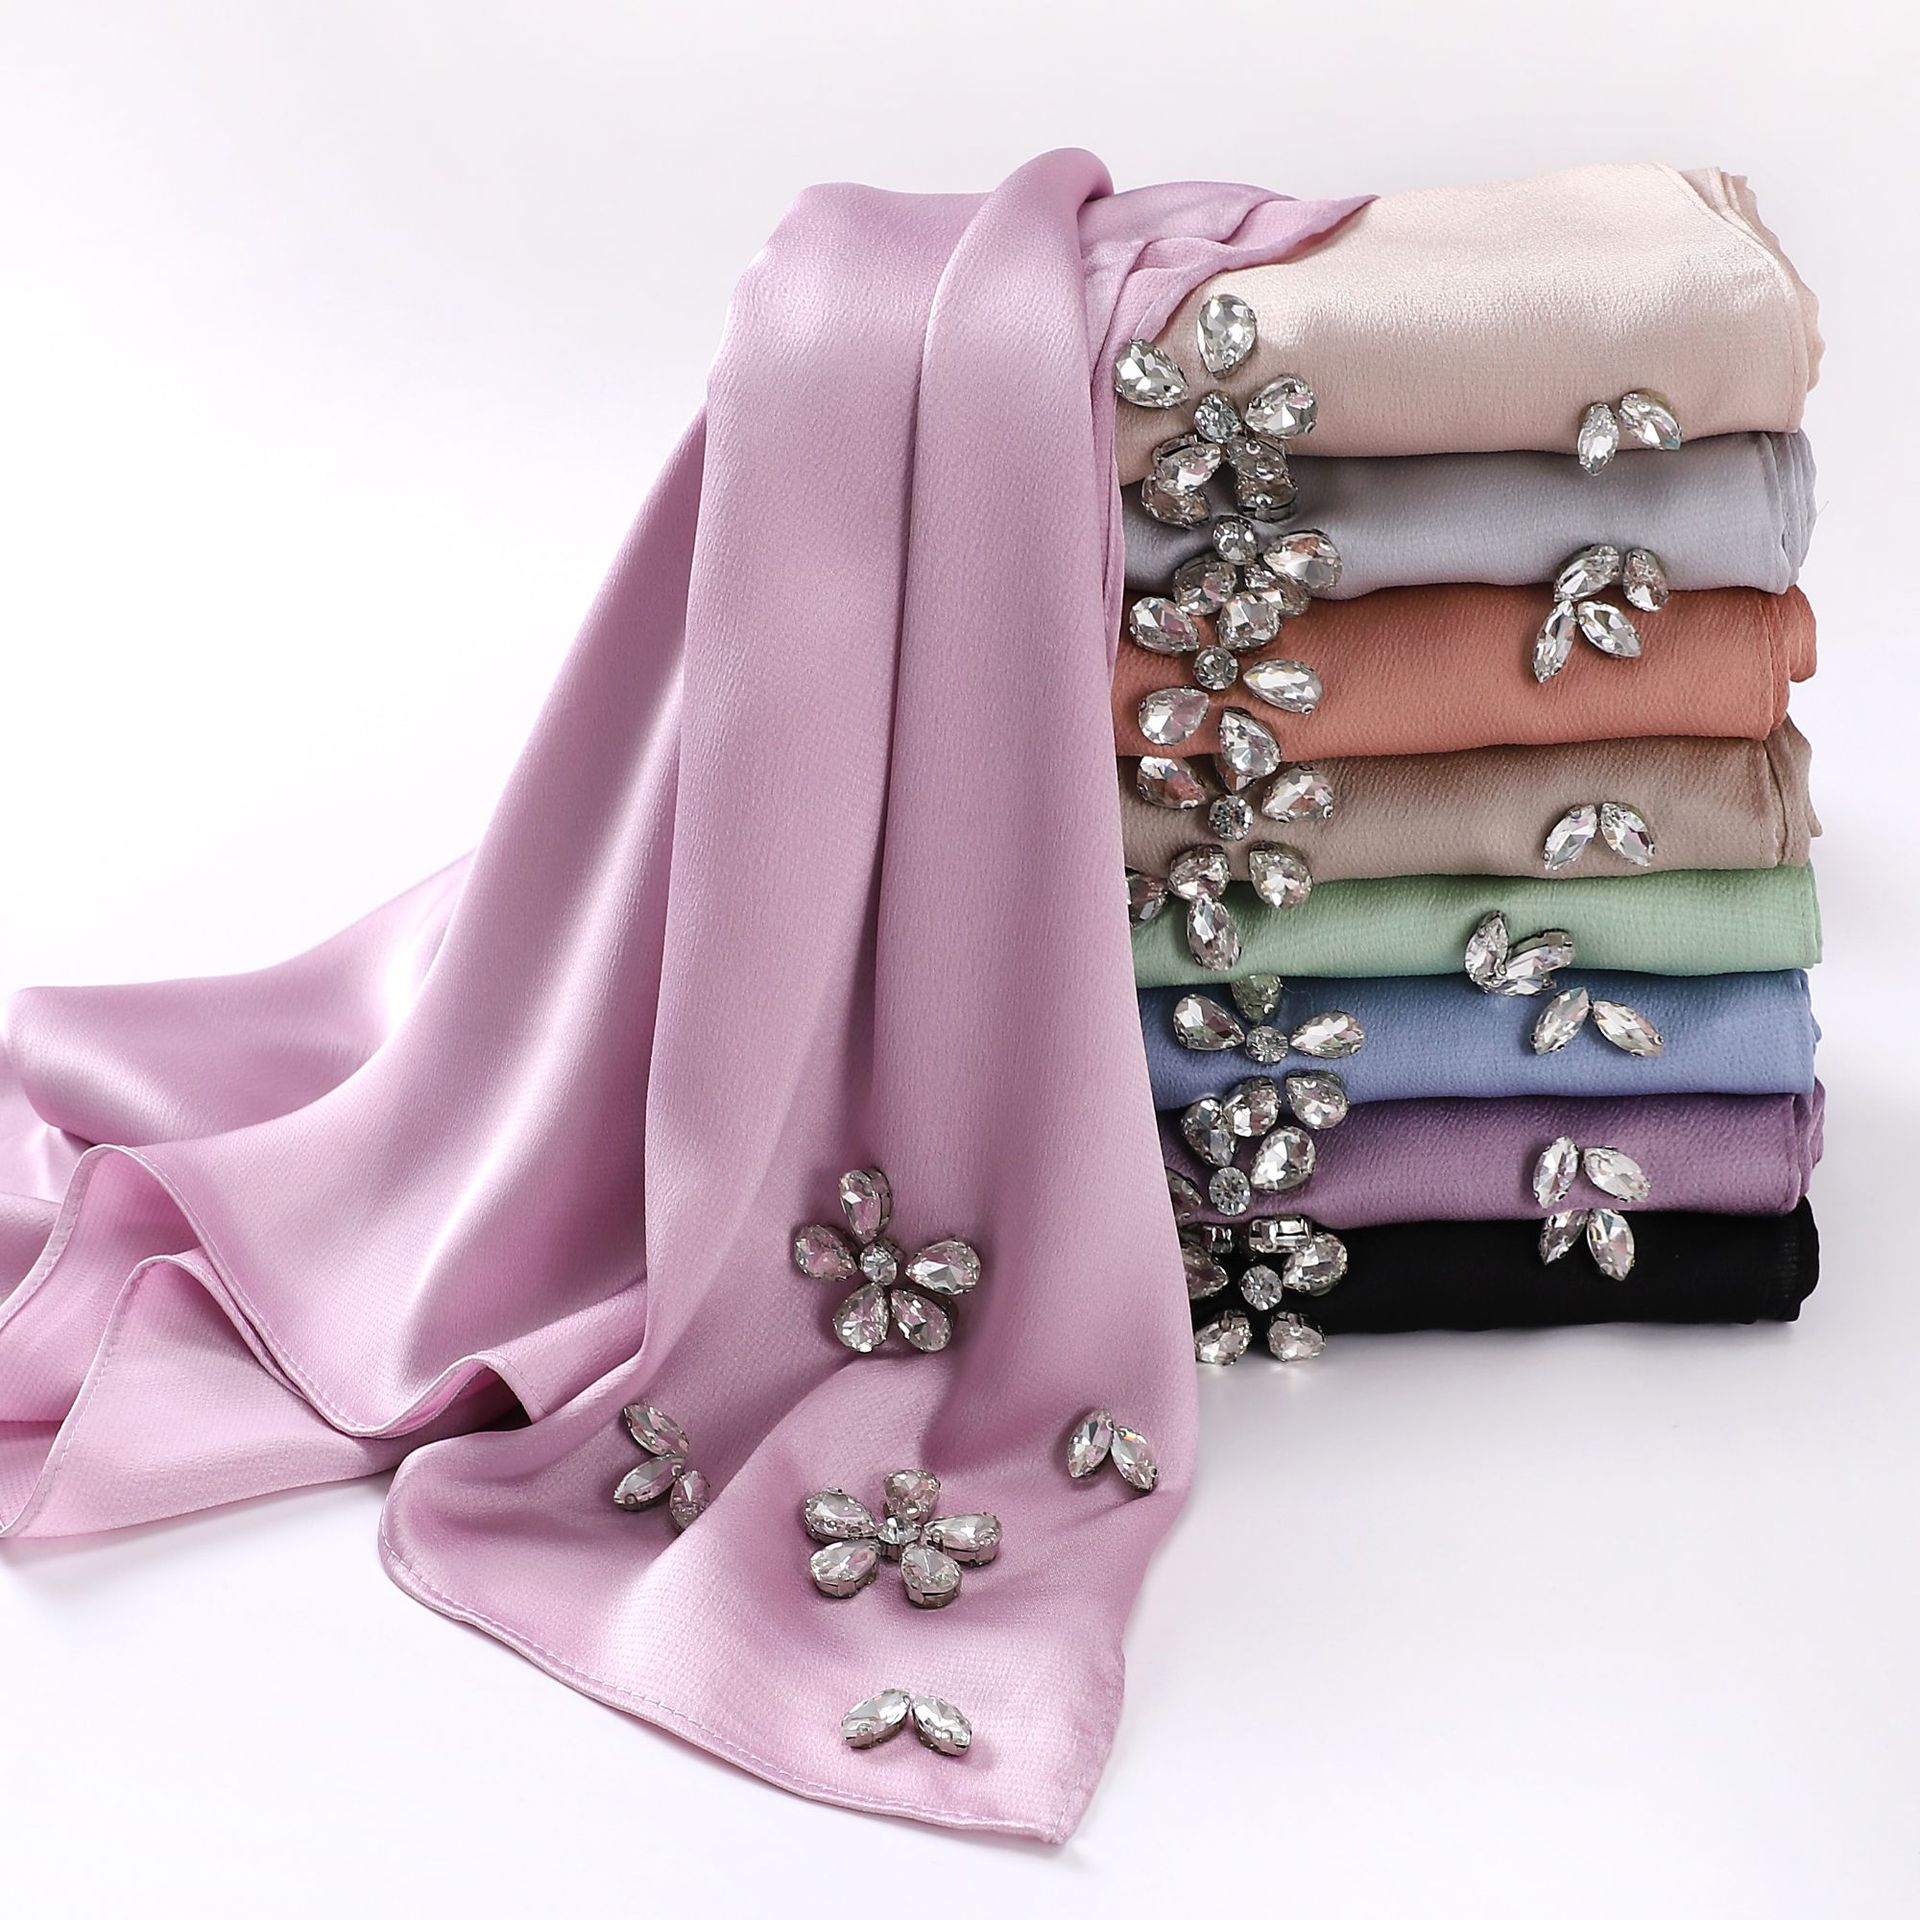 新款高密度珍珠雪纺回族头巾手工镶钻长巾马来纱巾女可代发hijab